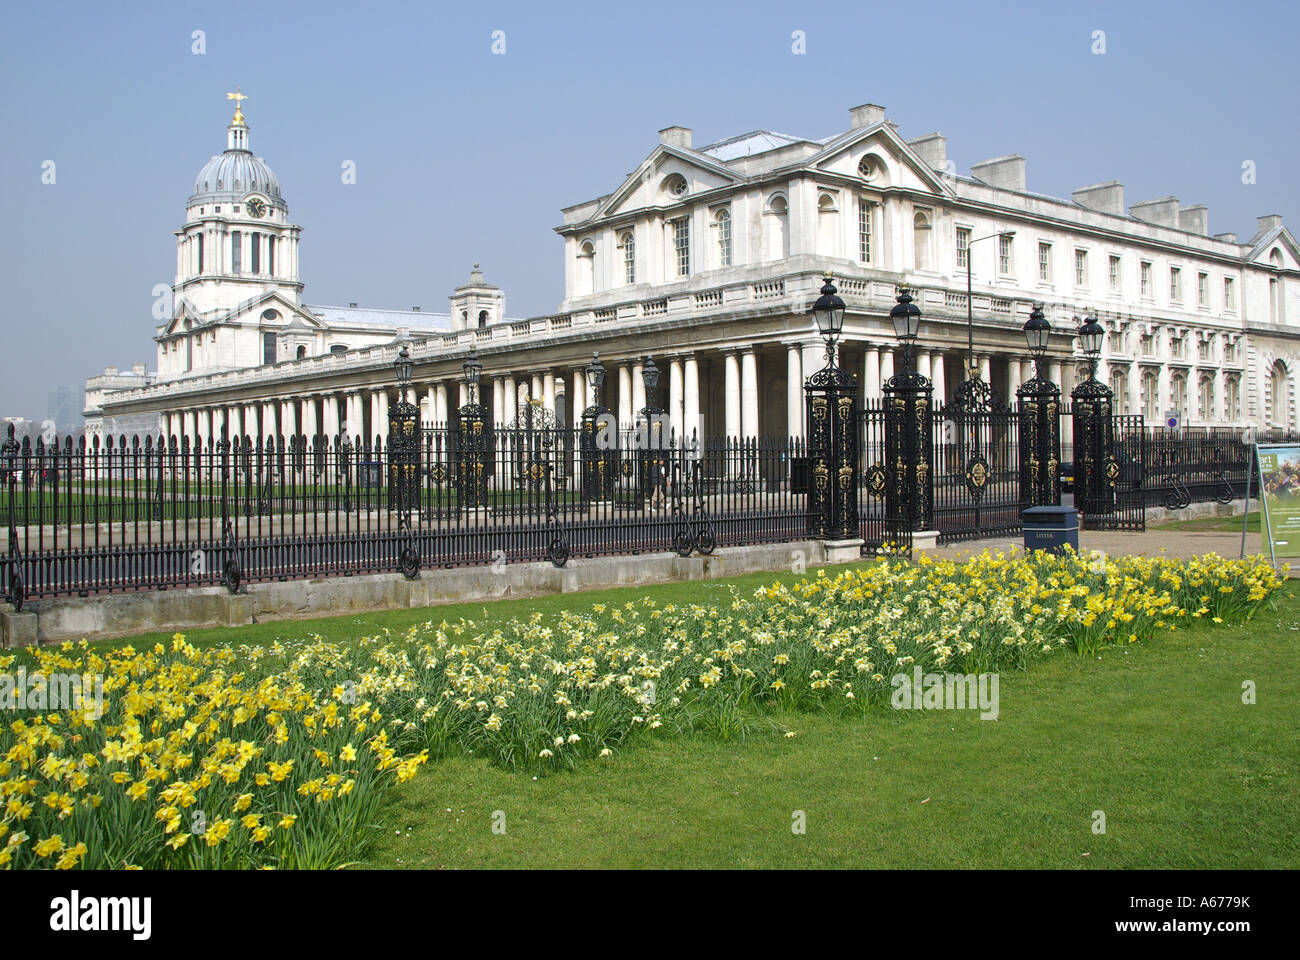 El Old Royal Naval College de edificios con visualización de florecimiento de primavera narcisos amarillos a lo largo del perímetro del Parque Greenwich de Londres Inglaterra Foto de stock